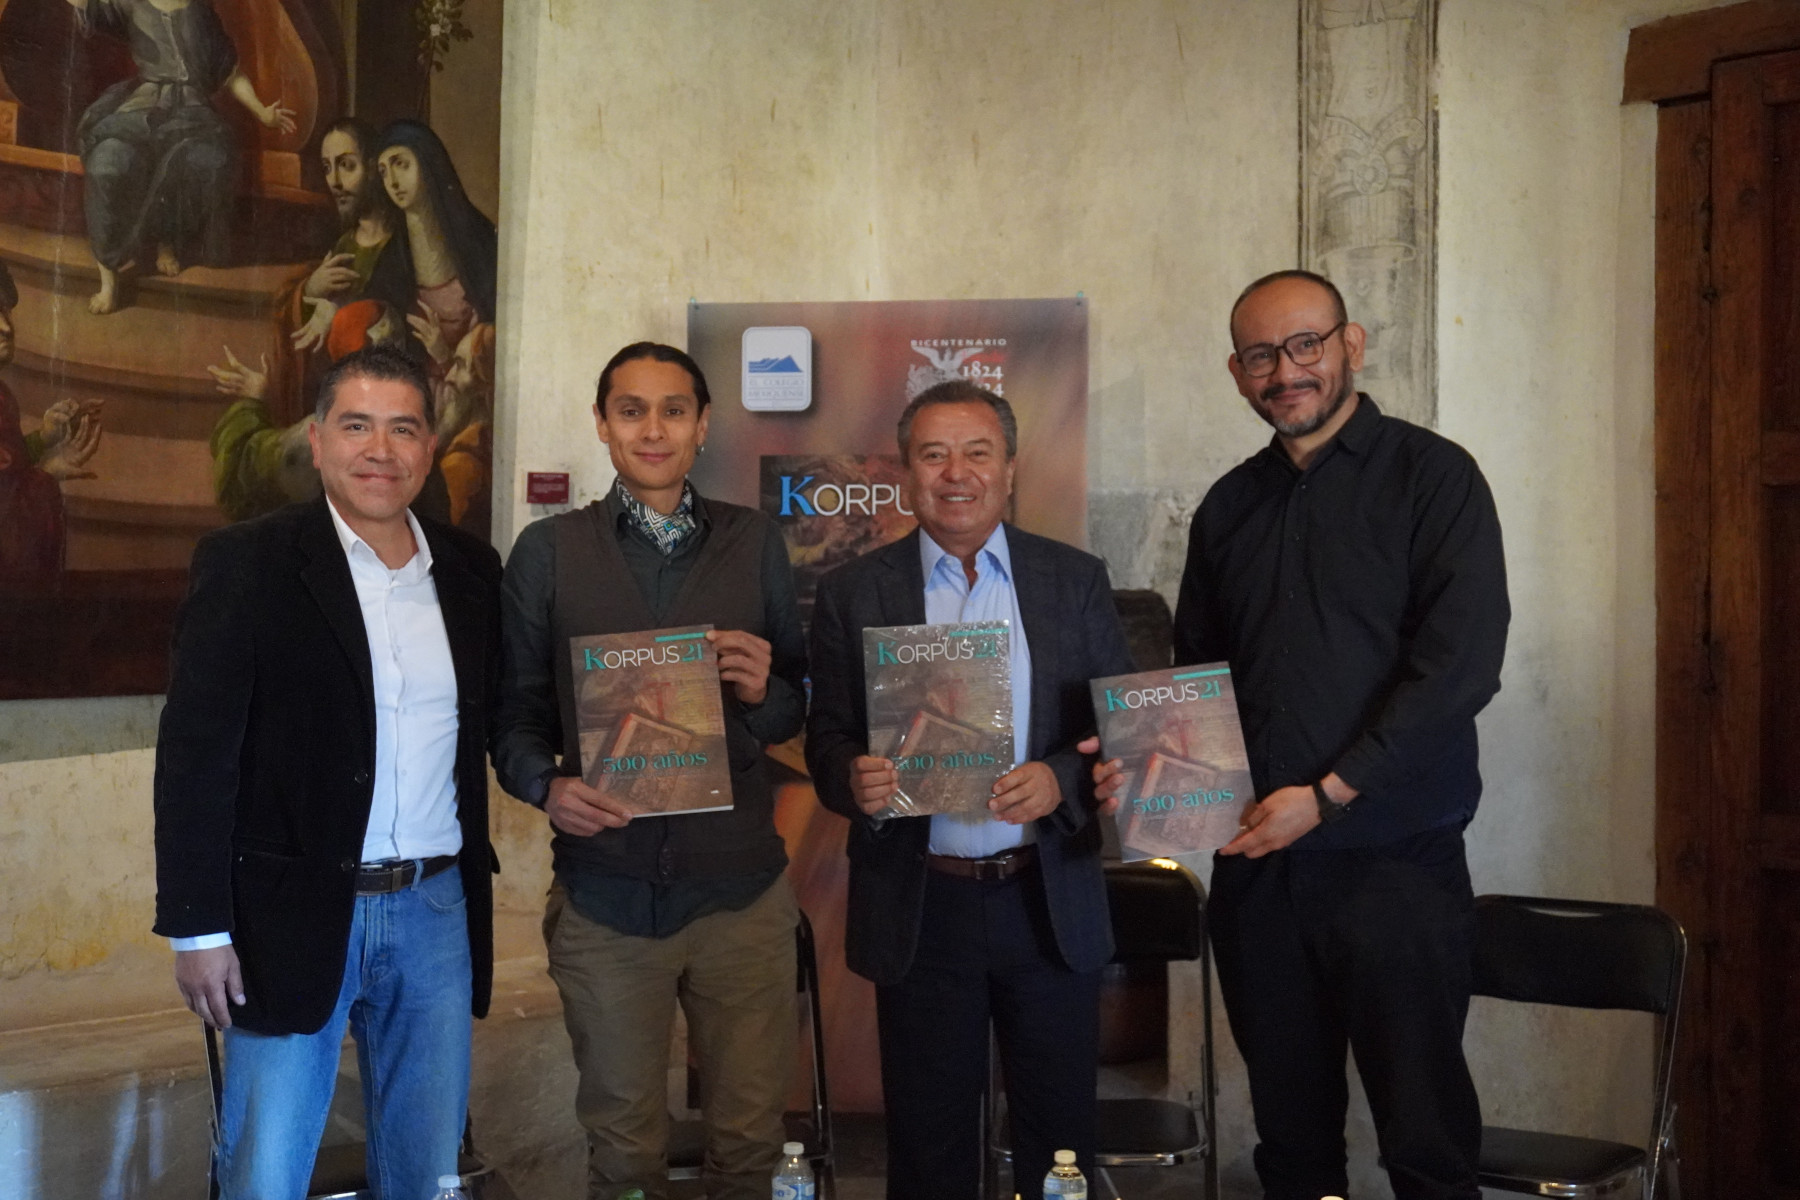 La revista Korpus21 dedica su número más reciente a los 500 años de evangelización en lengua náhuatl